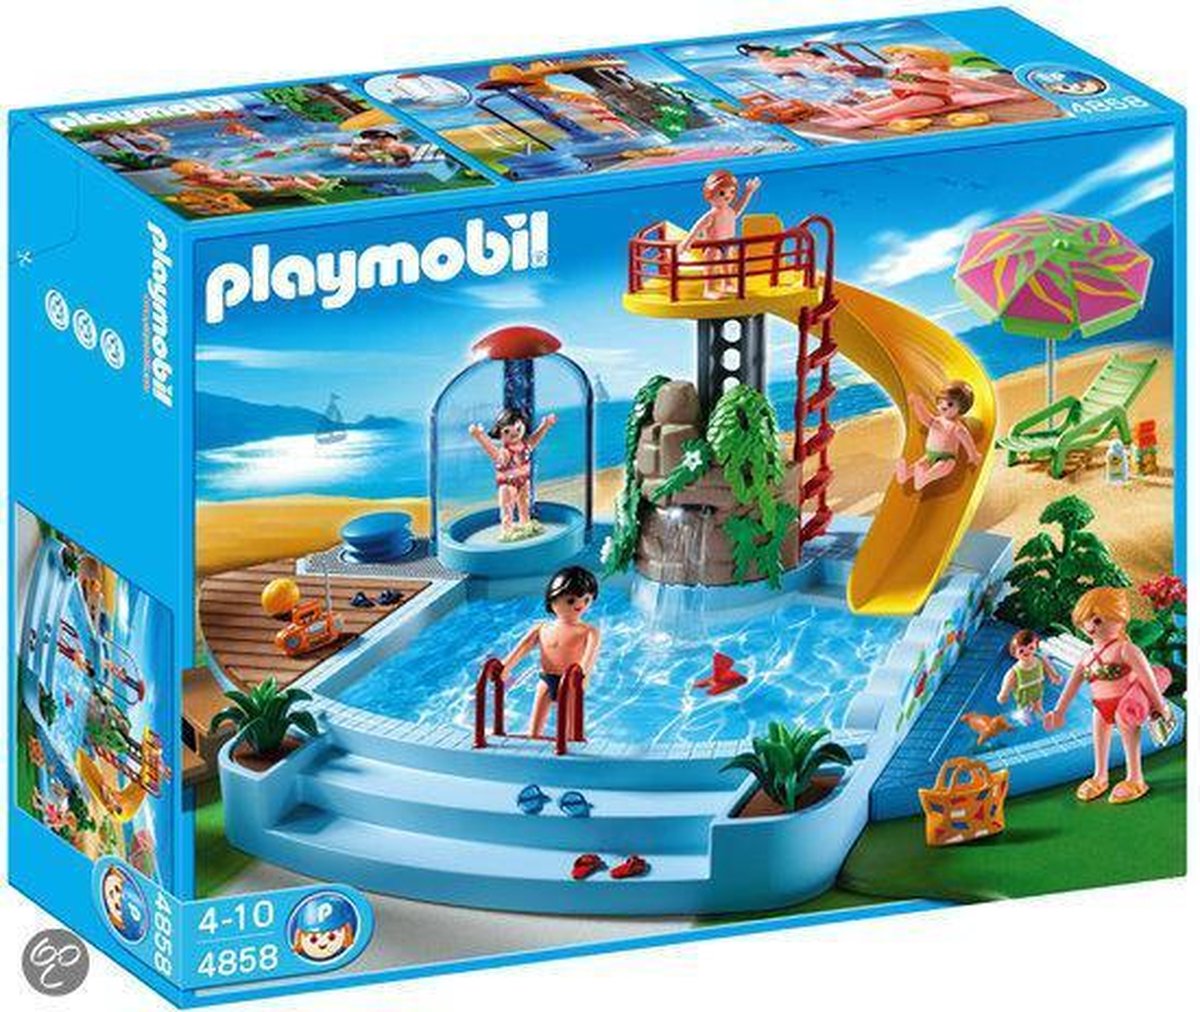 Monarch mentaal Snelkoppelingen Playmobil Openluchtzwembad Met Glijbaan - 4858 | bol.com